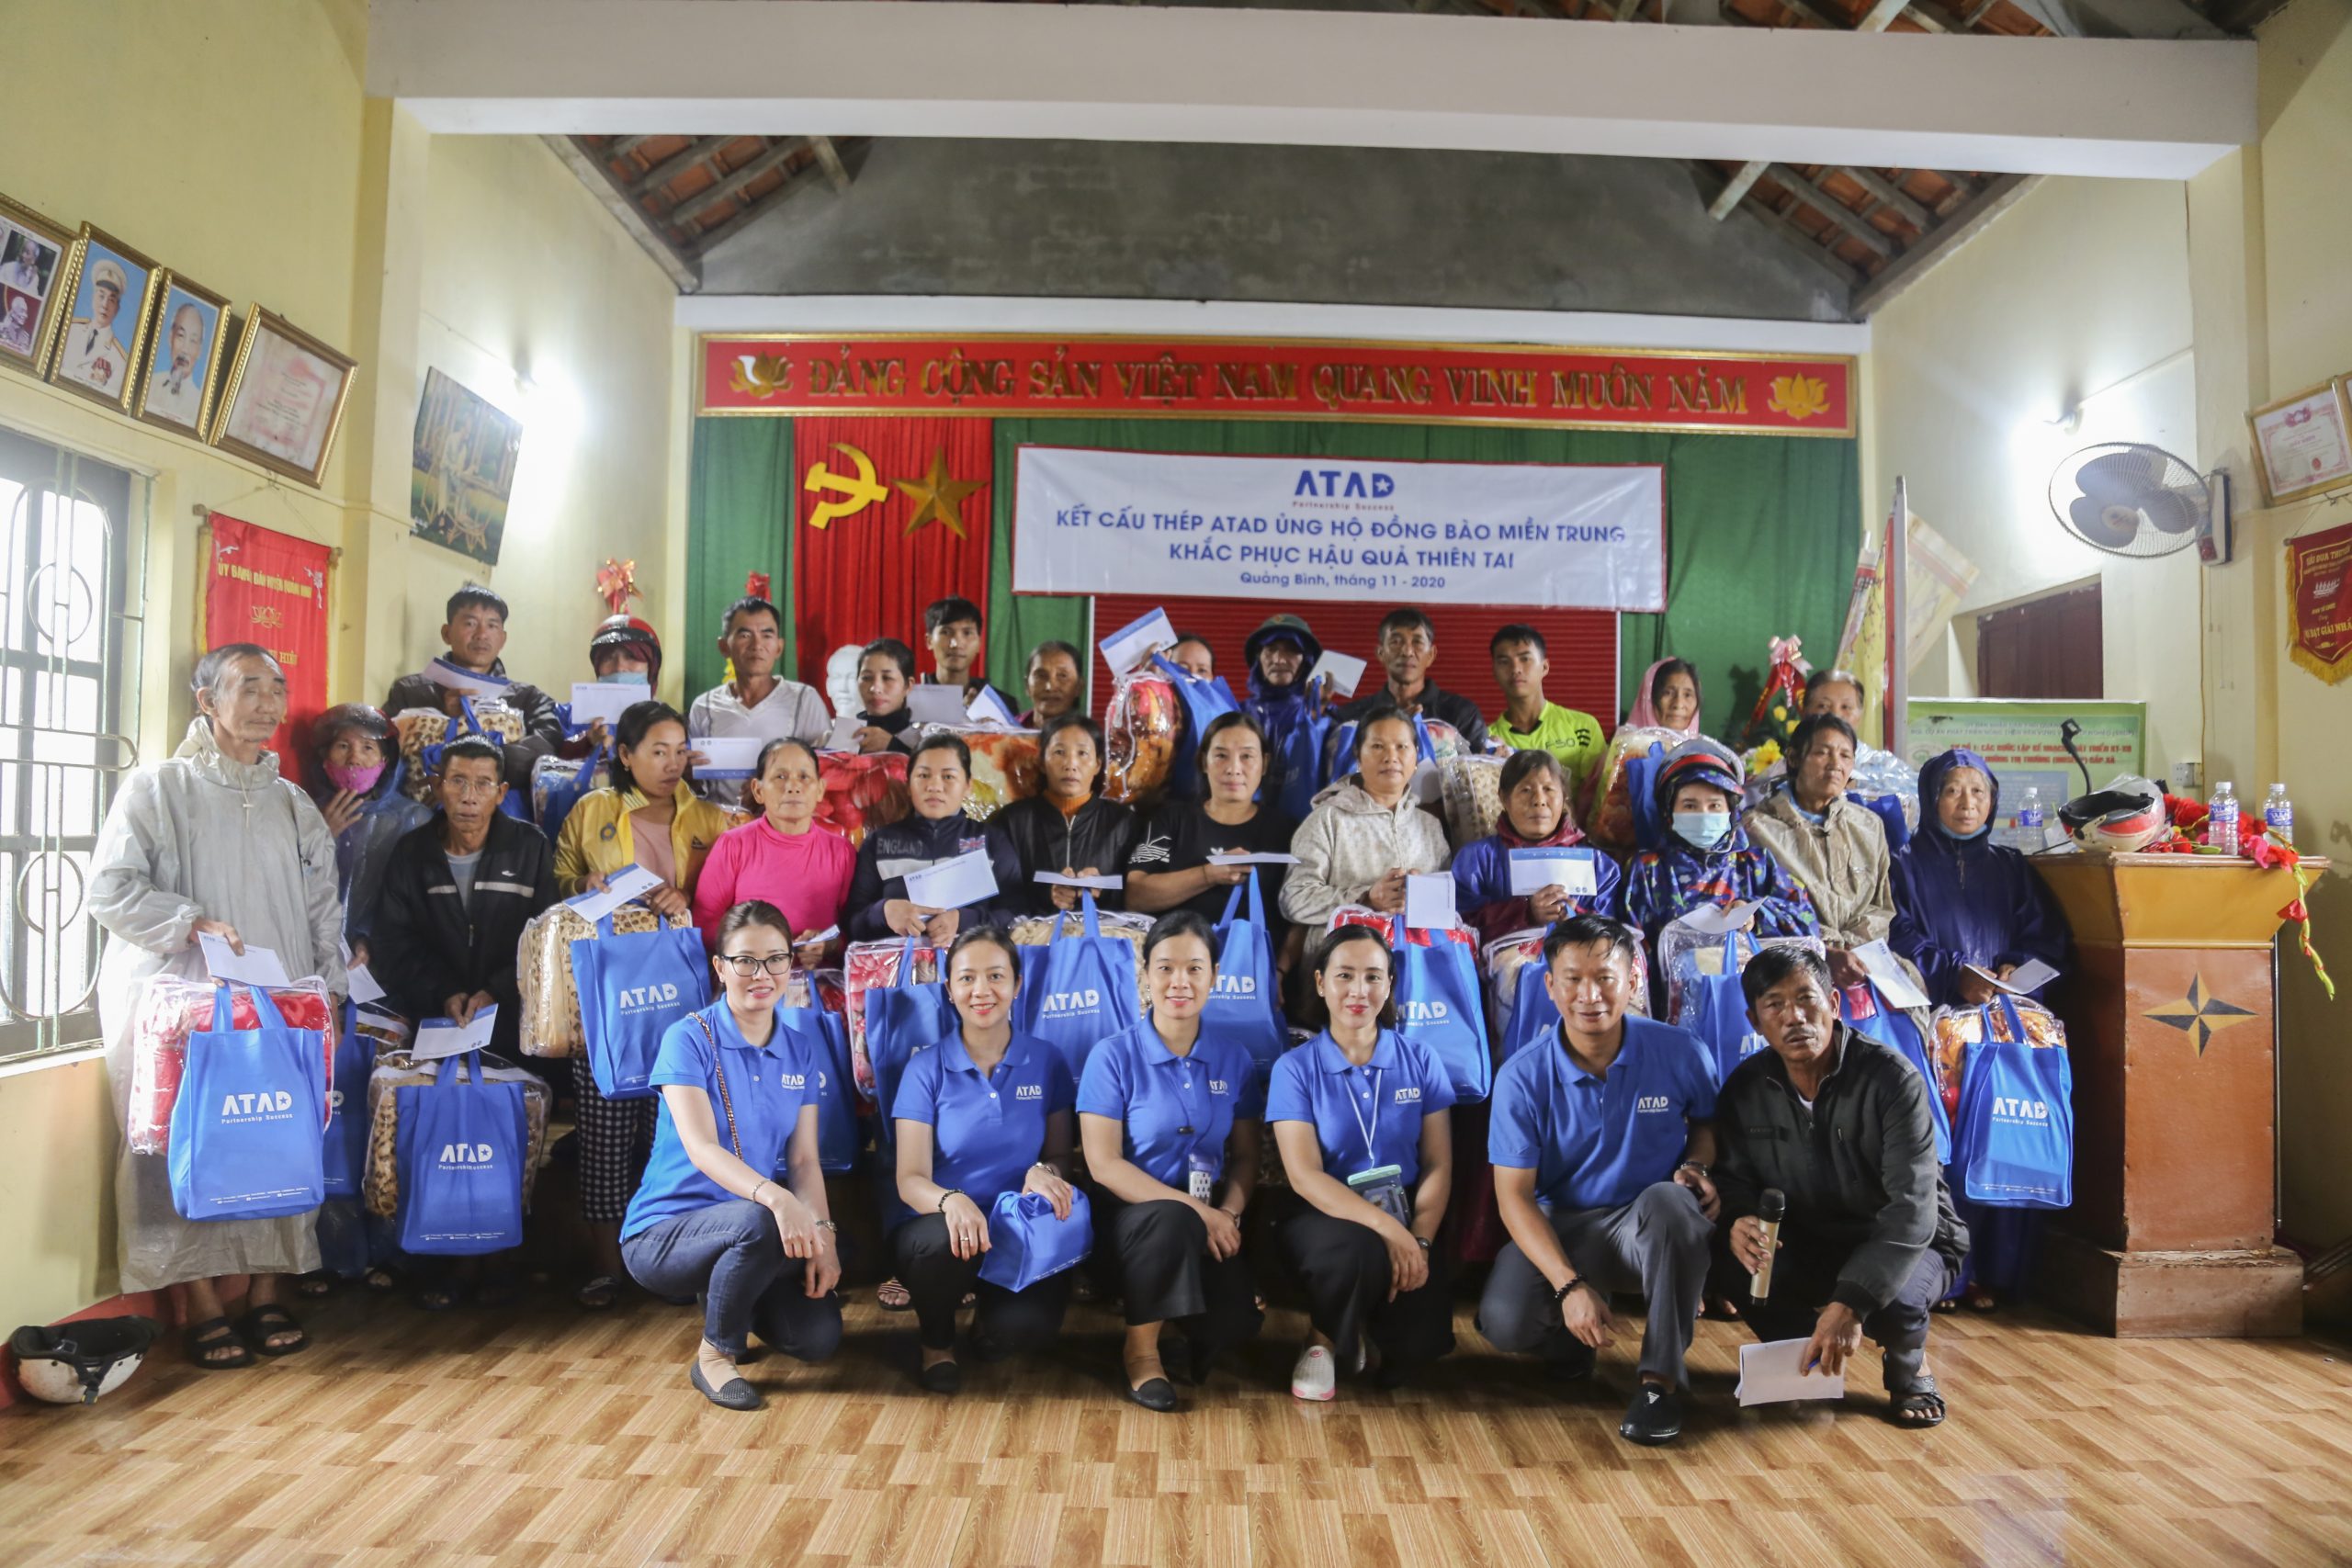 ATADは台風で被災したベトナム・クアンビン省の人々へプレゼントを贈呈しました